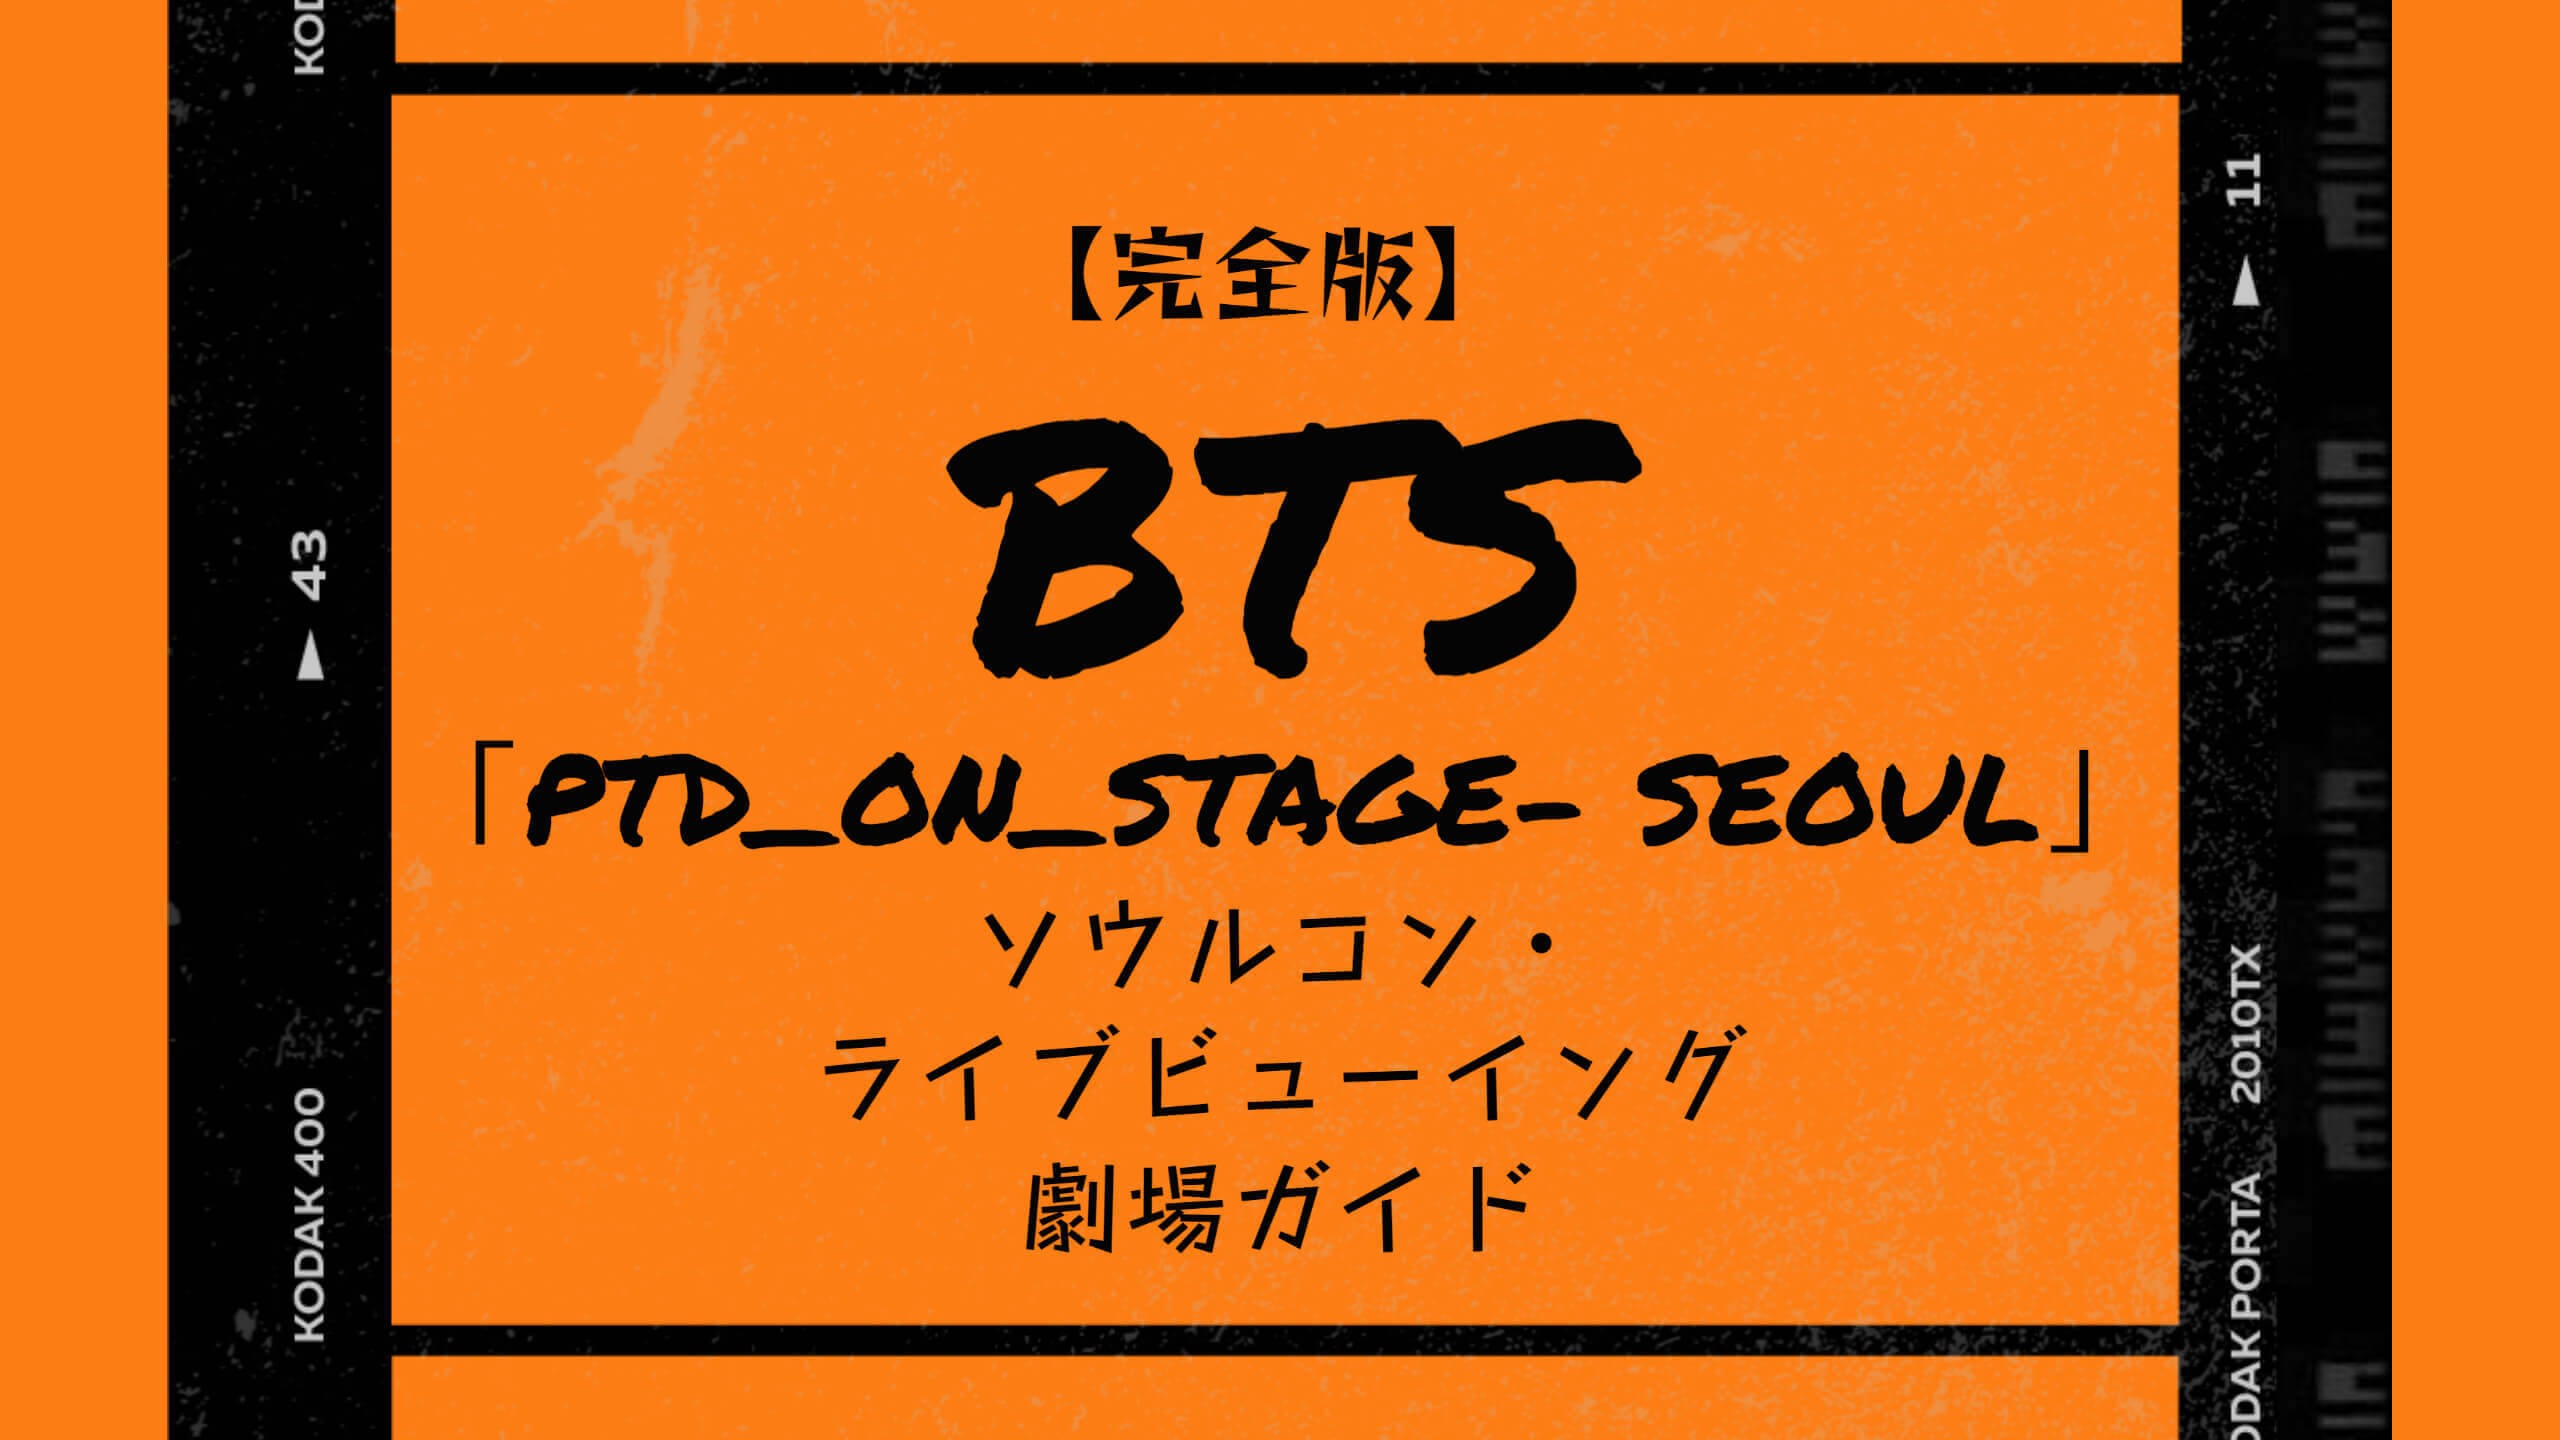 完全版 Bts Ptd On Stage Seoul ライブビューイング劇場ガイド